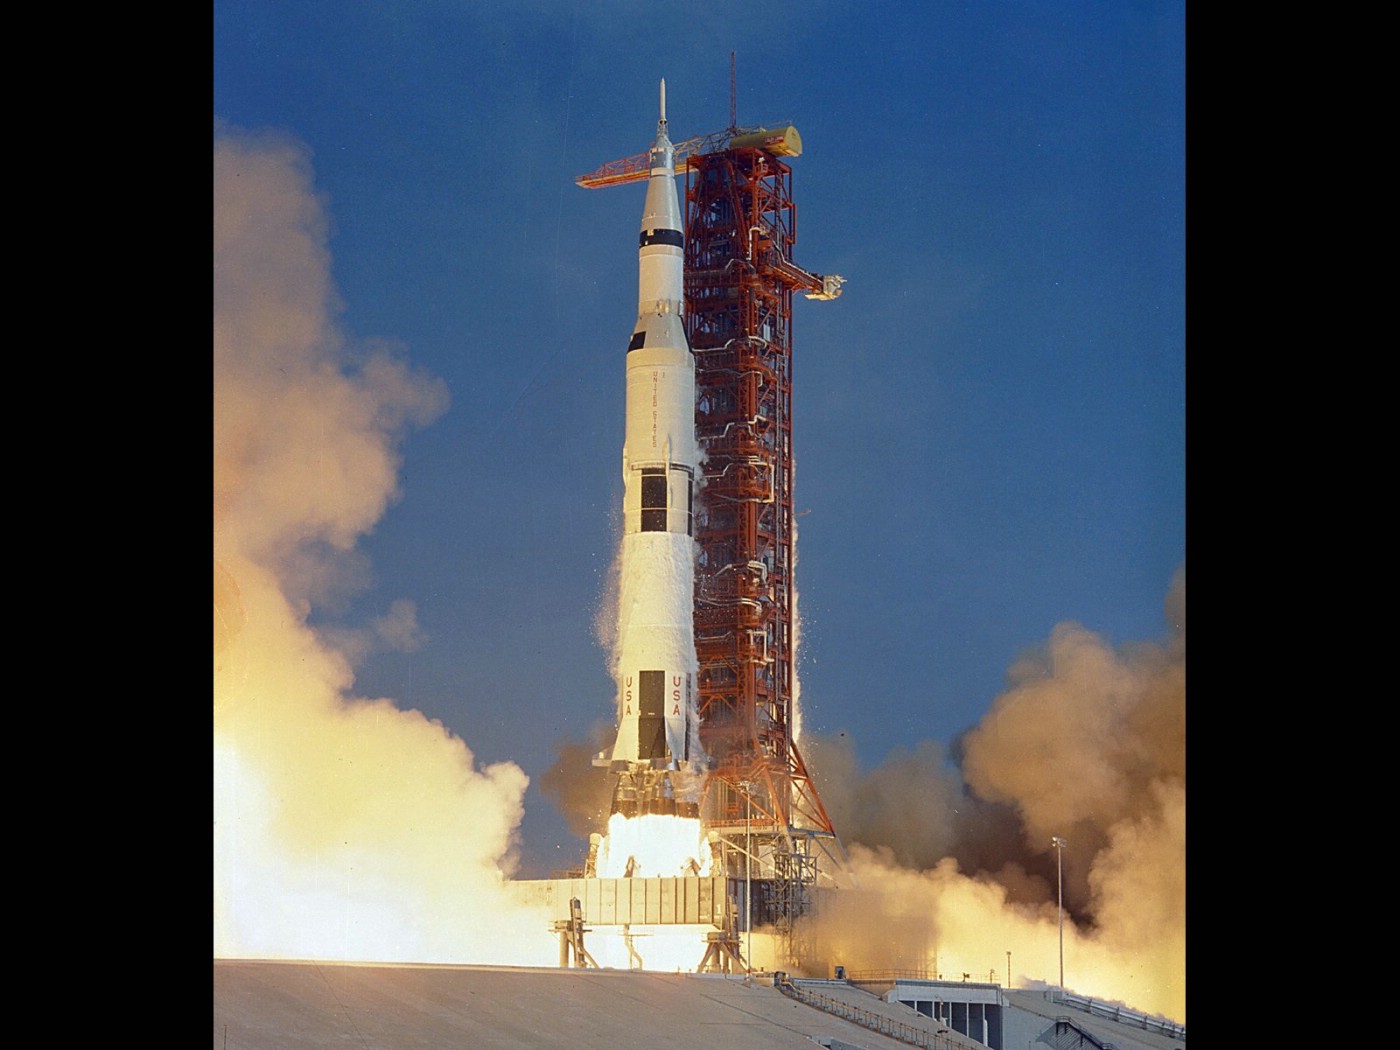 壁纸1400x1050One Giant Leap for Mankind  Apollo 11 Launch 1969年7月16日火箭发射壁纸 阿波罗11号登月40周年纪念壁纸壁纸 阿波罗11号登月40周年纪念壁纸图片 阿波罗11号登月40周年纪念壁纸素材 人文壁纸 人文图库 人文图片素材桌面壁纸